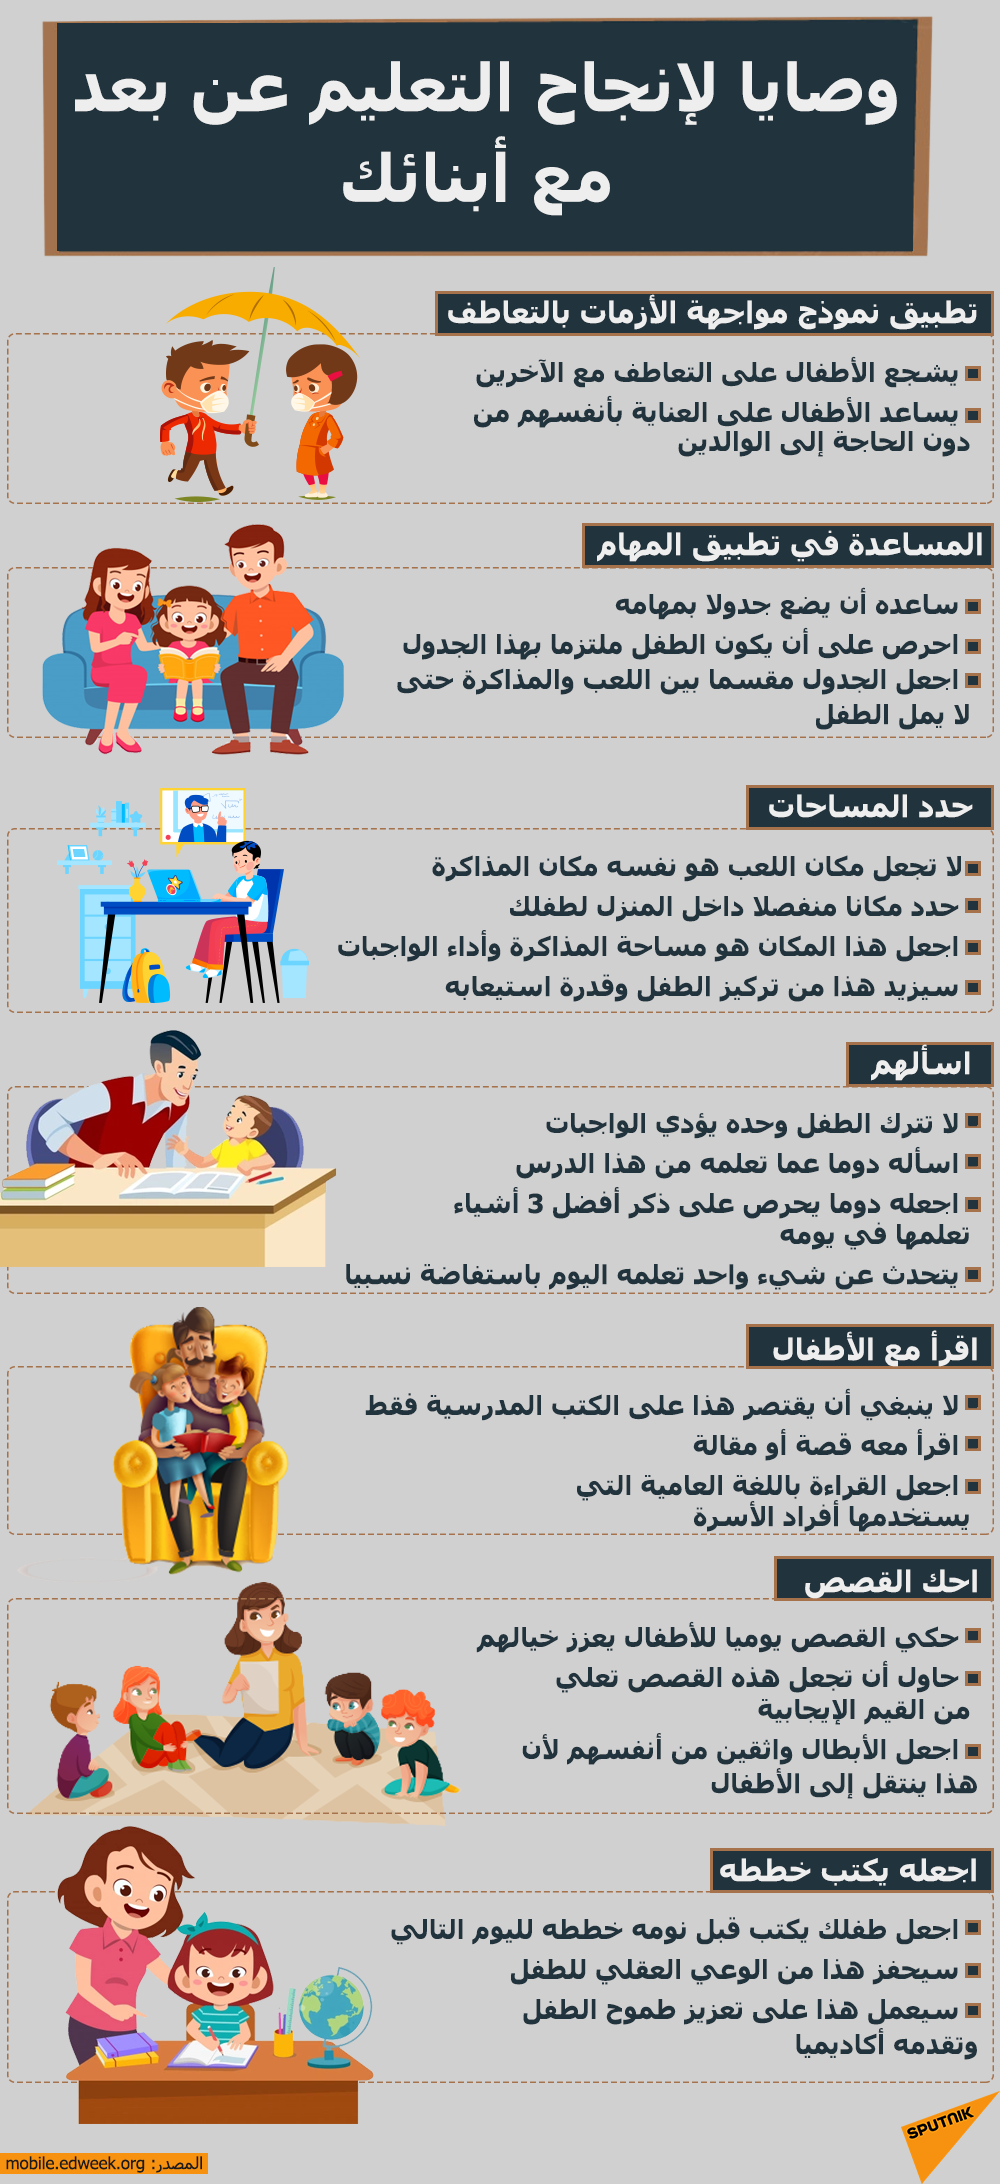 وصايا لإنجاح التعليم عن بعد مع أبنائك - سبوتنيك عربي